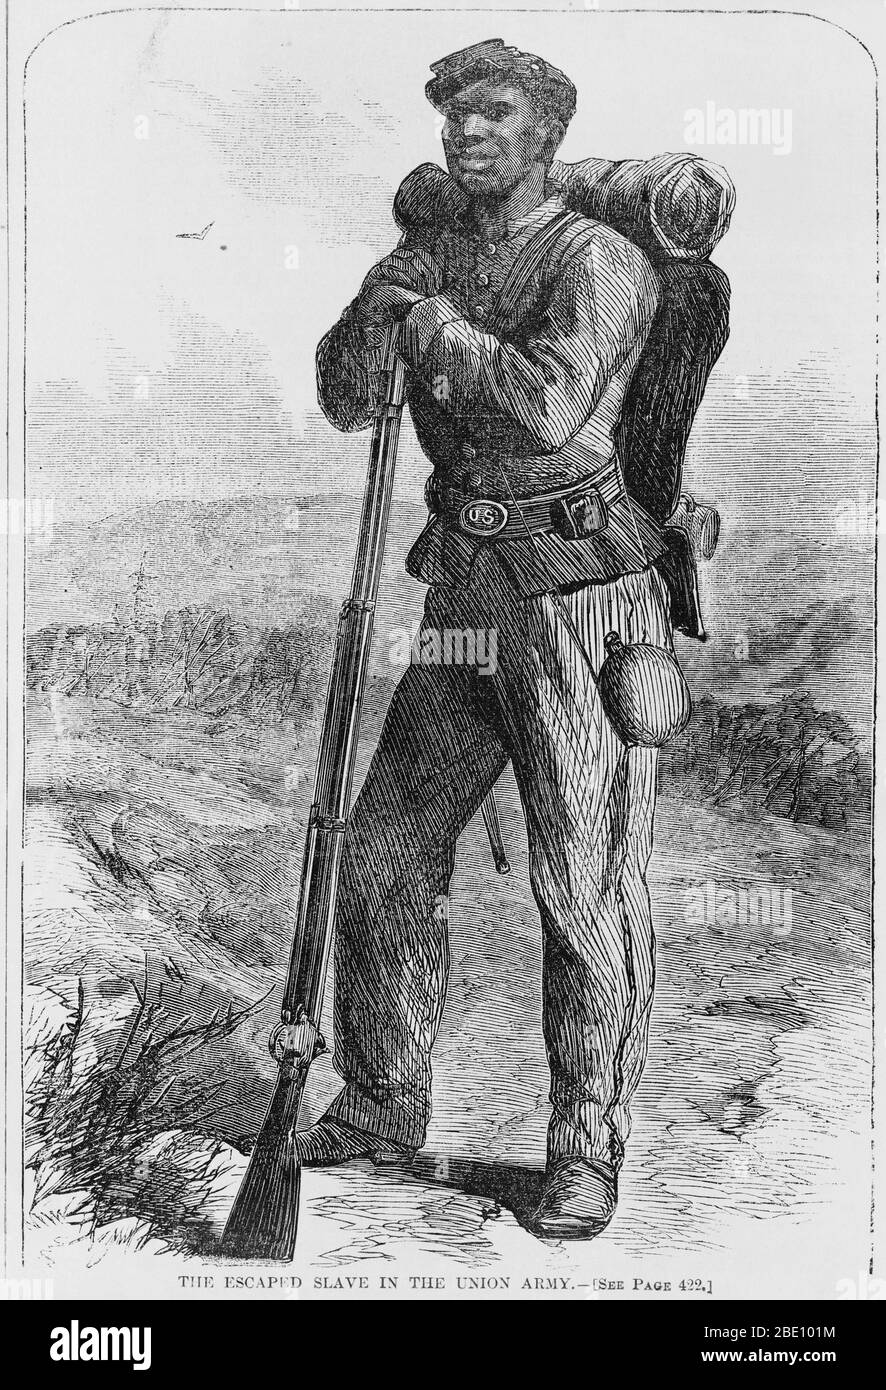 Holzstich eines entflohenen Sklaven, der der Union Armee im amerikanischen Bürgerkrieg beigetreten ist. Schwarze "Flüchtlinge" Soldaten, ausgeratene Sklaven, wurden vom Norden in einer Erklärung von General Benjamin Butler im Mai 1861 als "Kriegsverbund" angesehen. Sie kämpften mit den nördlichen Truppen. Stockfoto